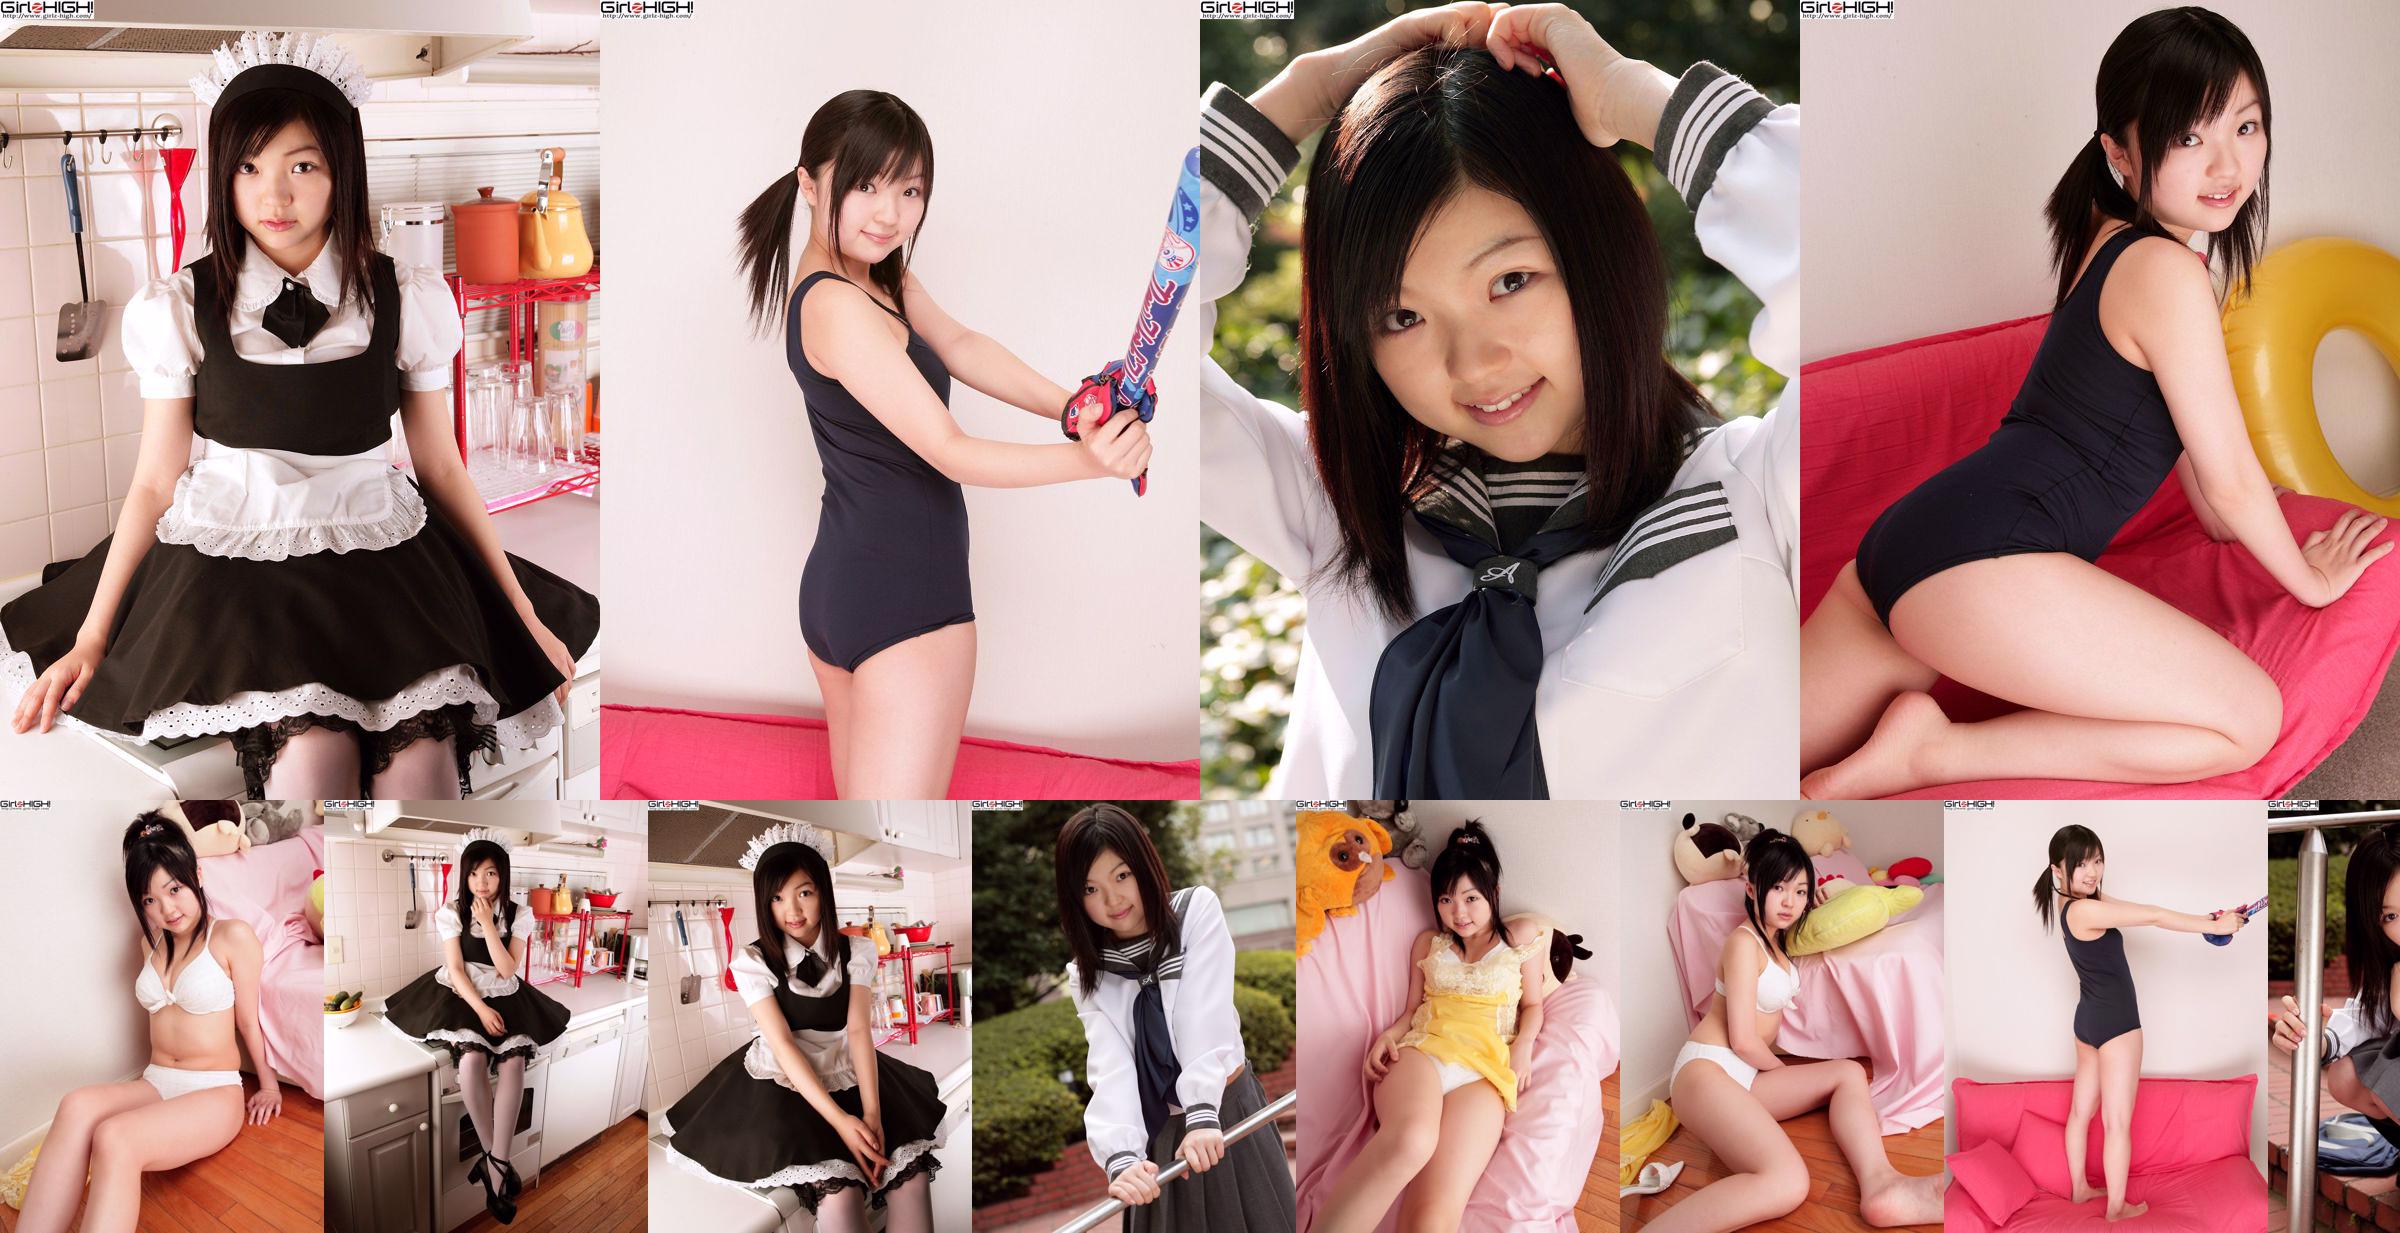 [Girlz-High] Misaki Moe Misaki Gravure Gallery-g074 Ensemble de photos 04 No.30d569 Page 1